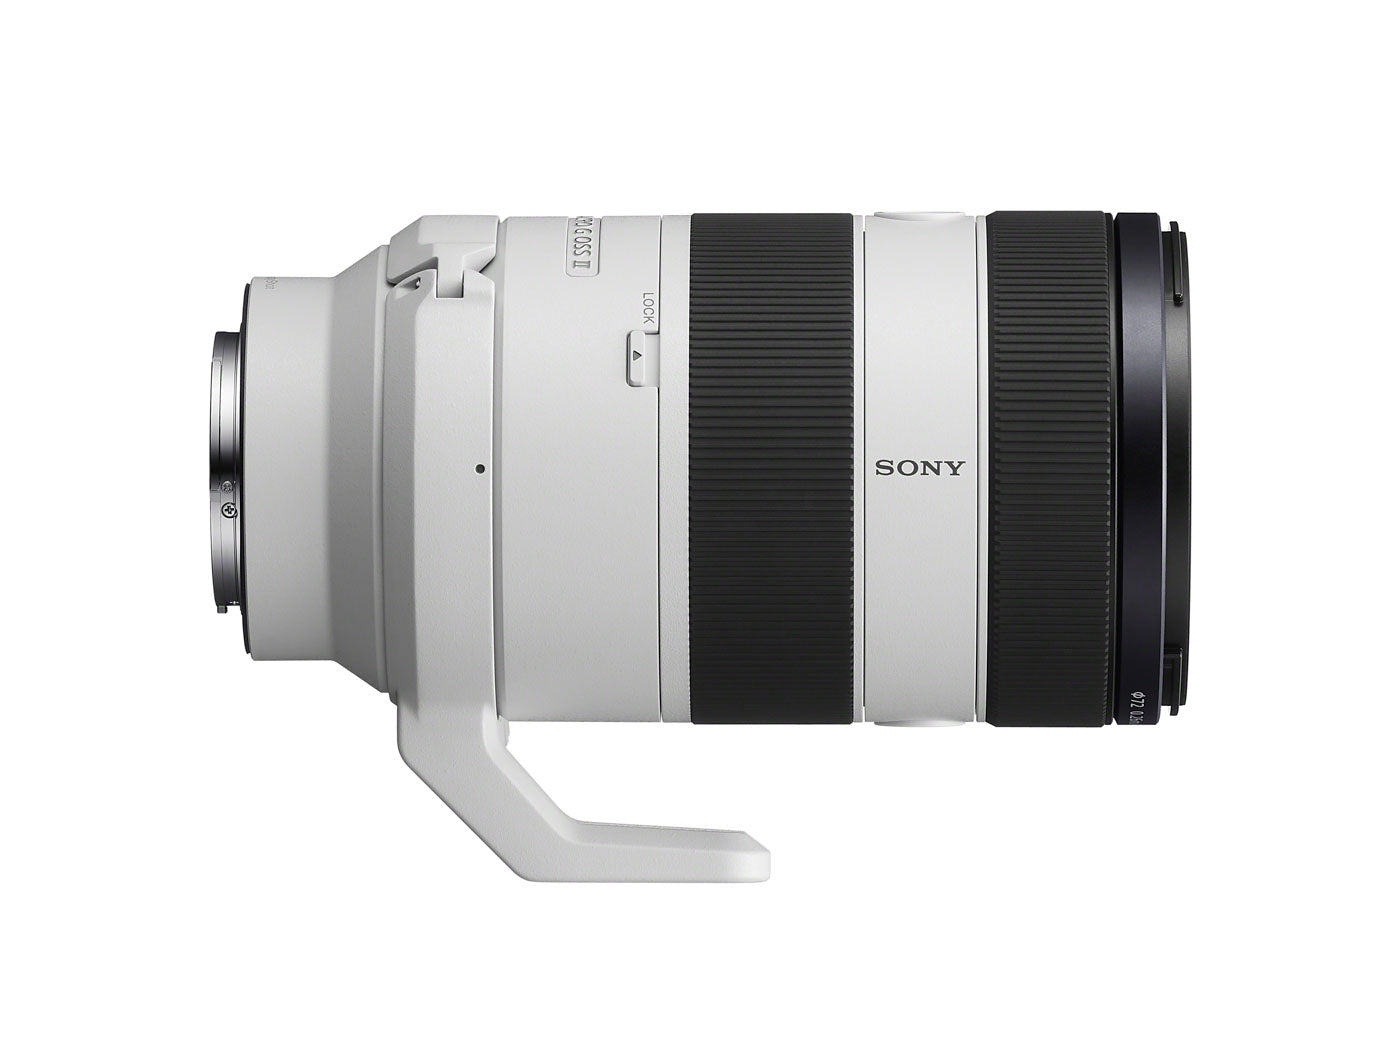 Sony FE 70-200mm F4 G OSS II Lens